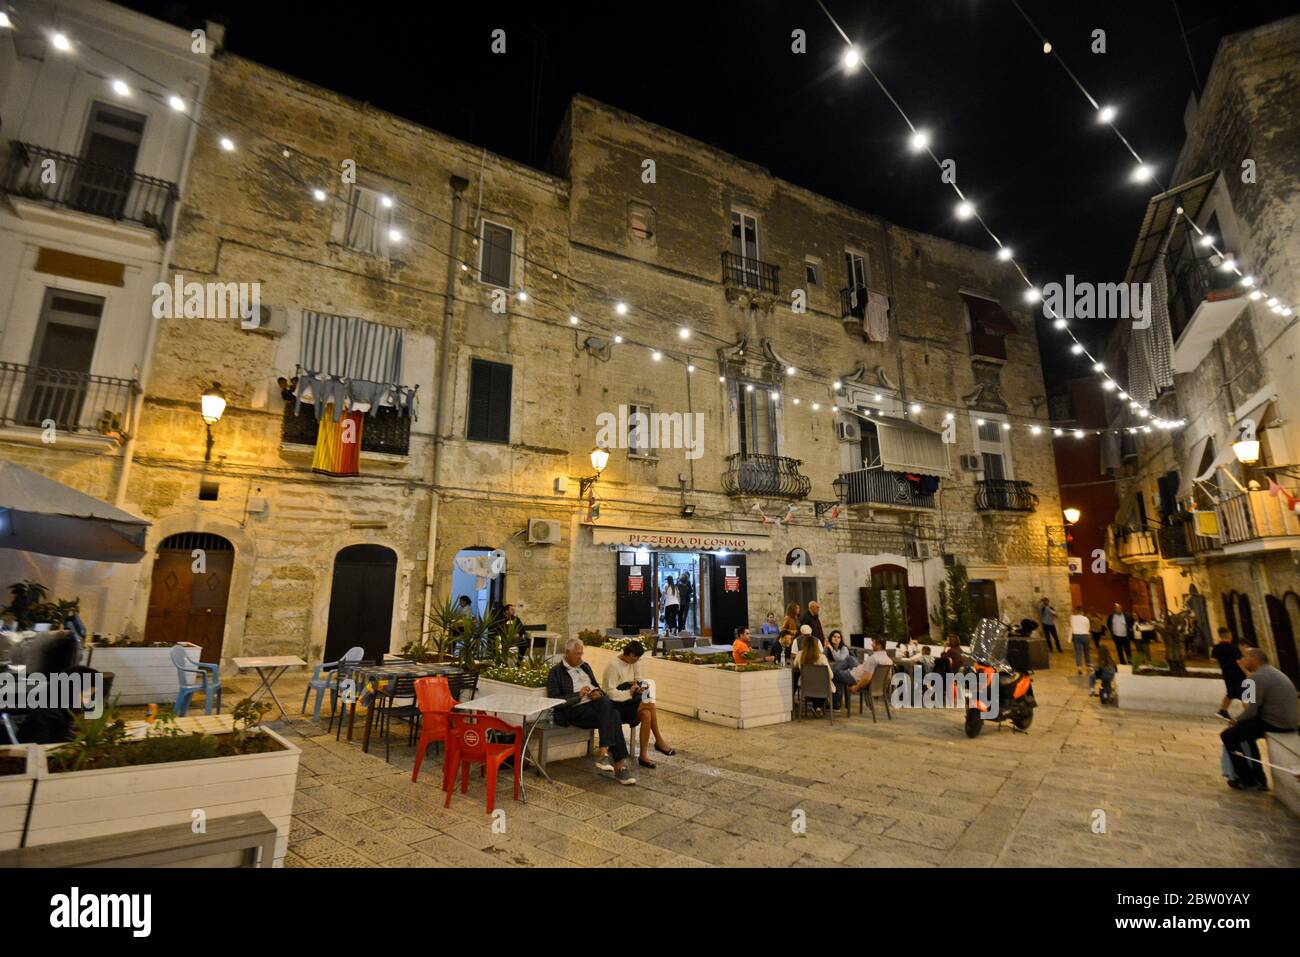 Vieille ville de Bari (Citta Vecchia), avec des personnes qui dînent dans la rue, Italie Banque D'Images